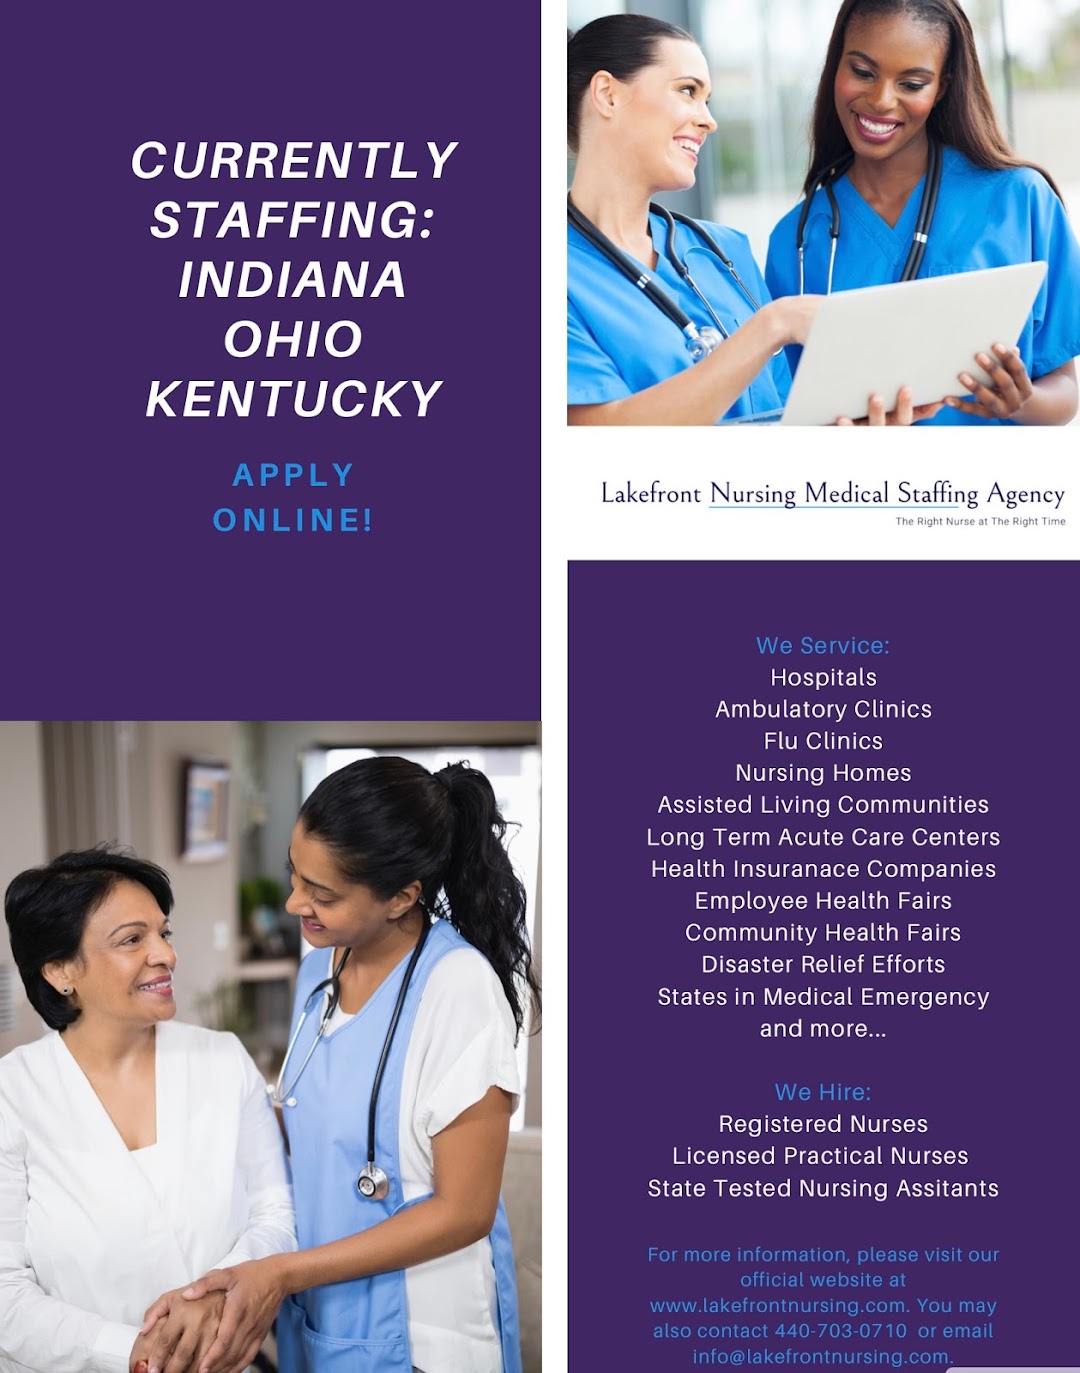 Lakefront Nursing Medical Staffing Agency